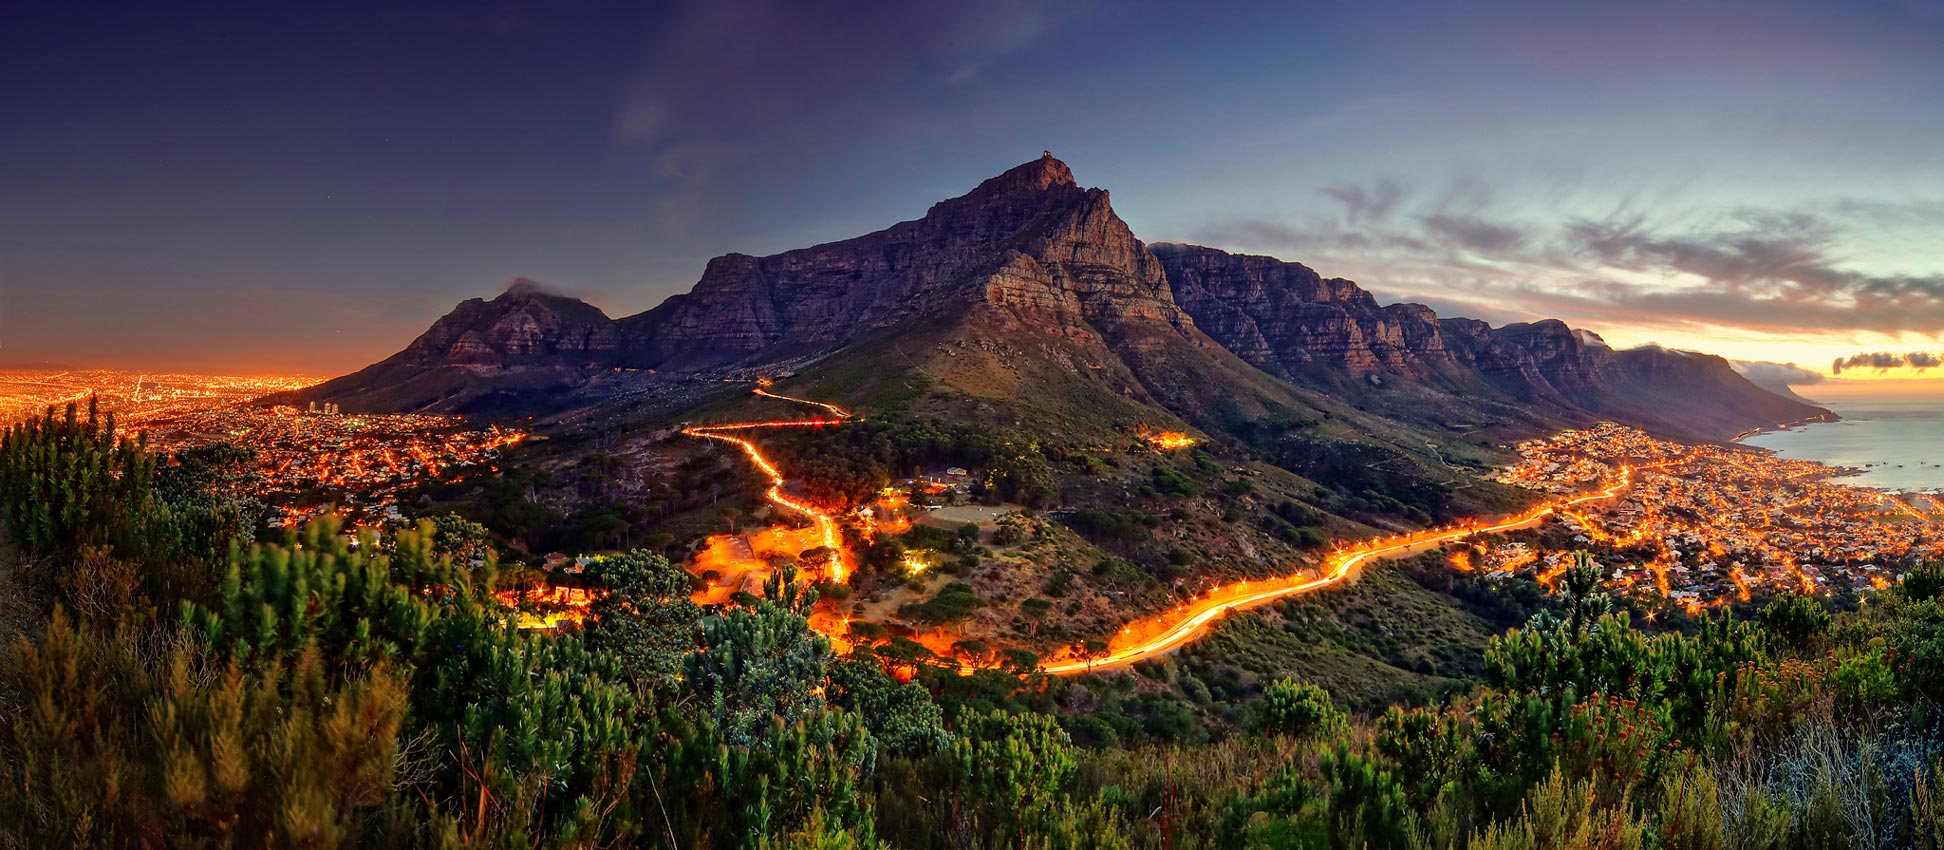 Lighting Home & Living South Africa etna.com.pe